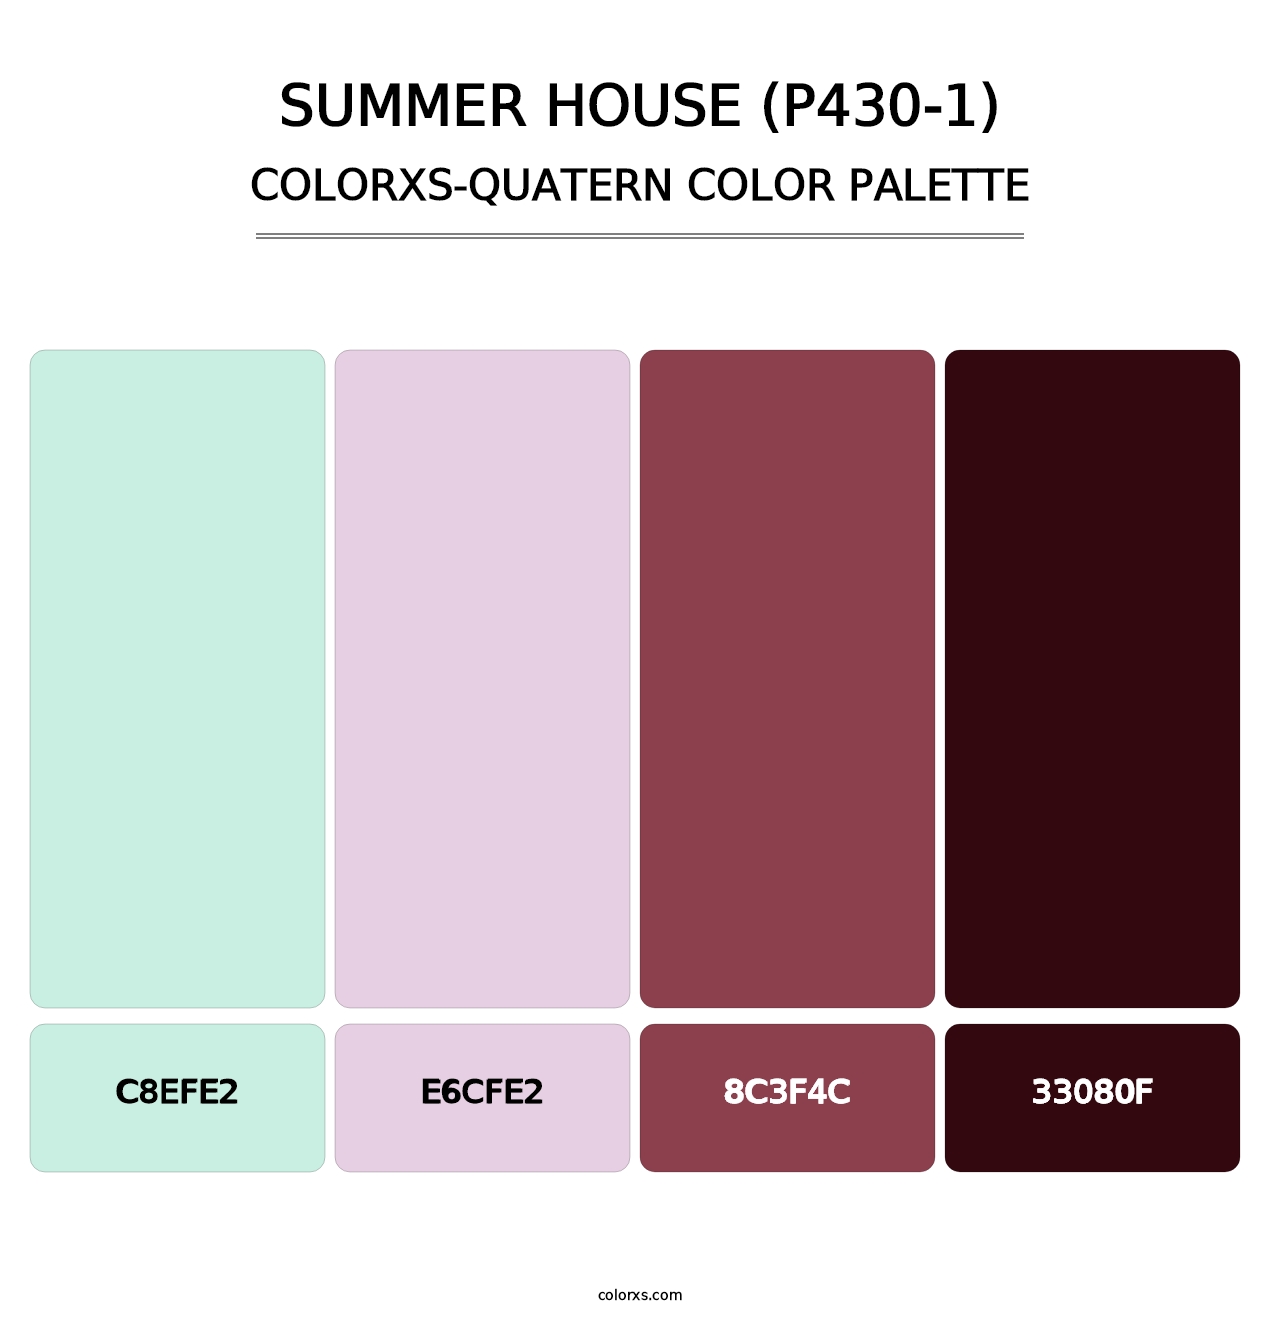 Summer House (P430-1) - Colorxs Quatern Palette